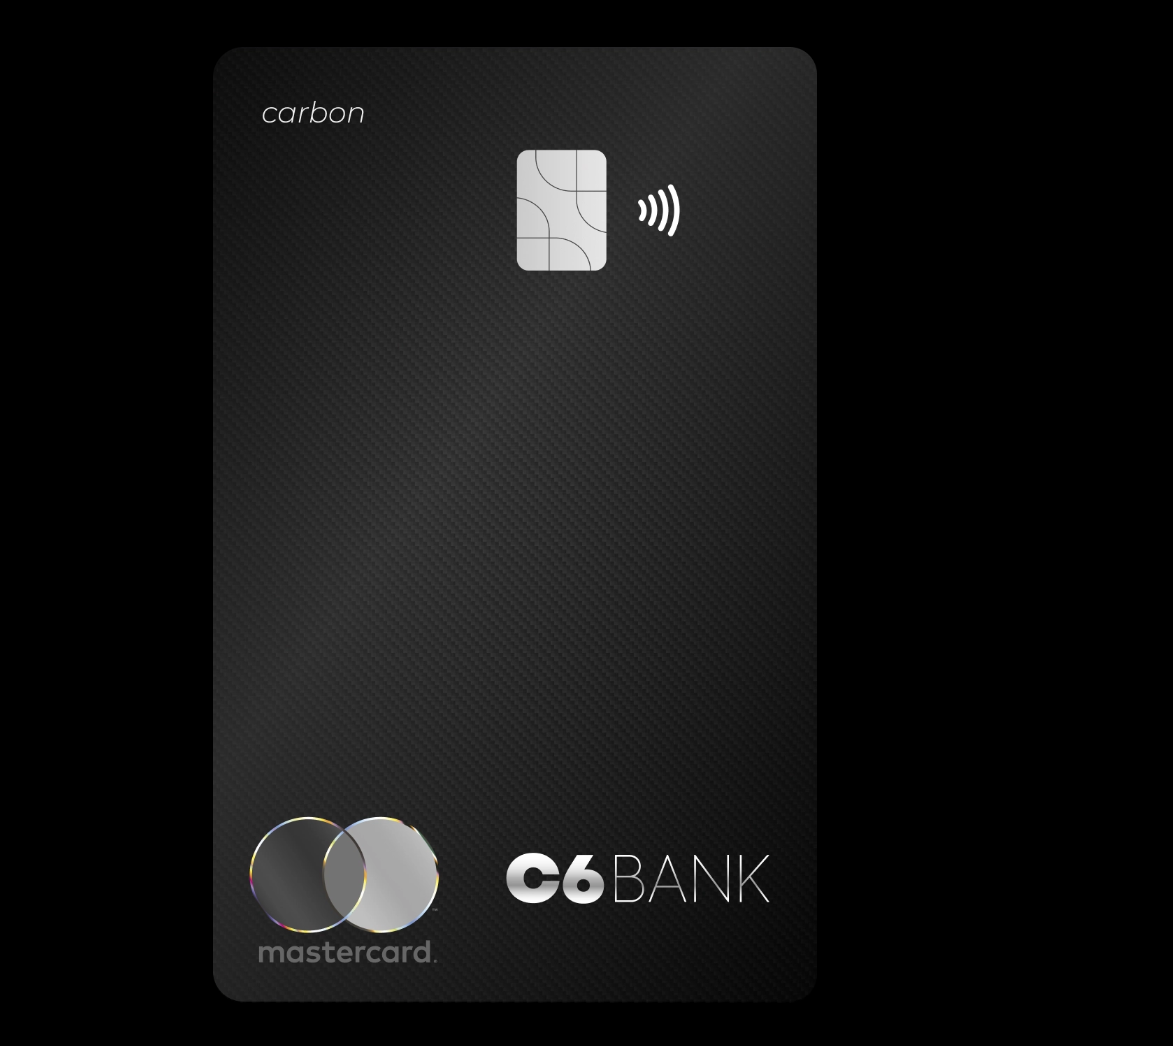 O cartão C6 Bank